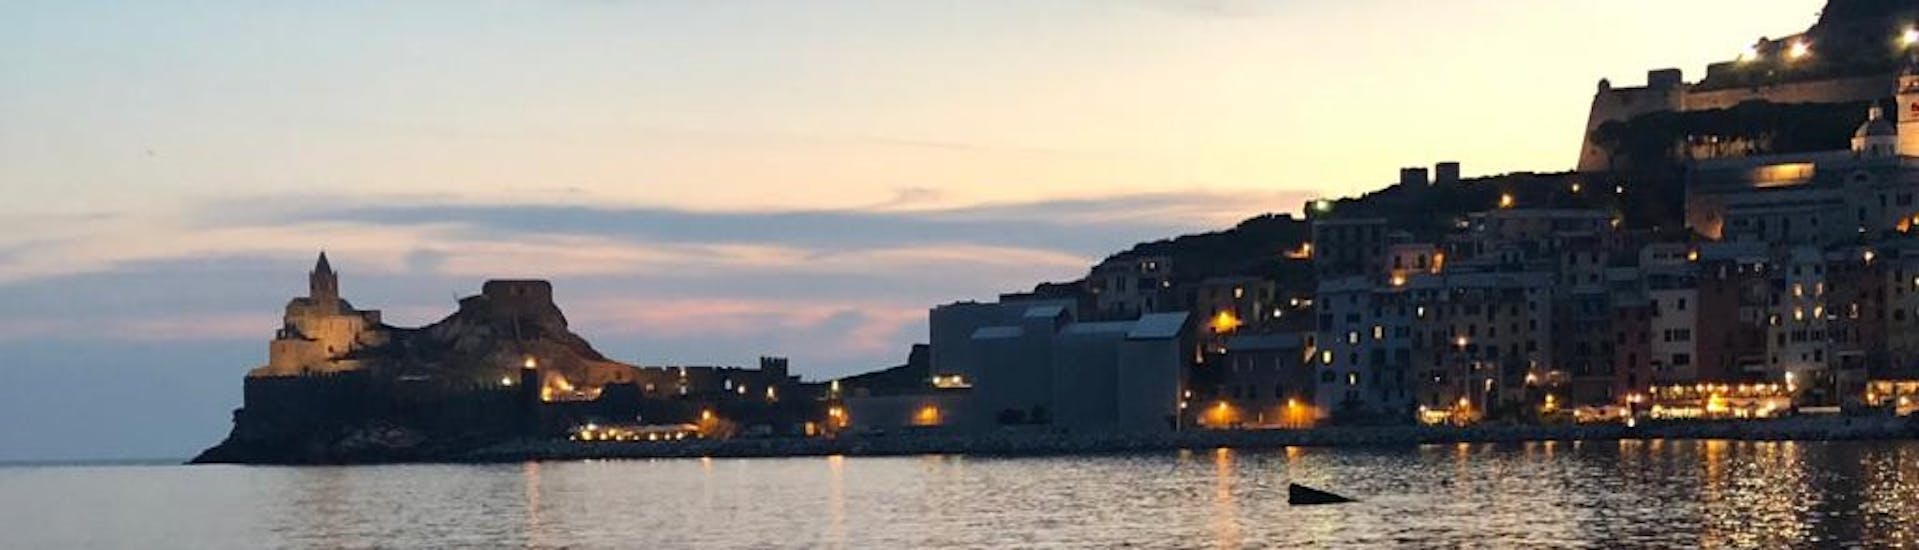 Uitzicht op Porto Venere tijdens de zonsondergang boottocht naar Porto Venere met aperitief met nautische verhuur Boottocht Porto Venere.